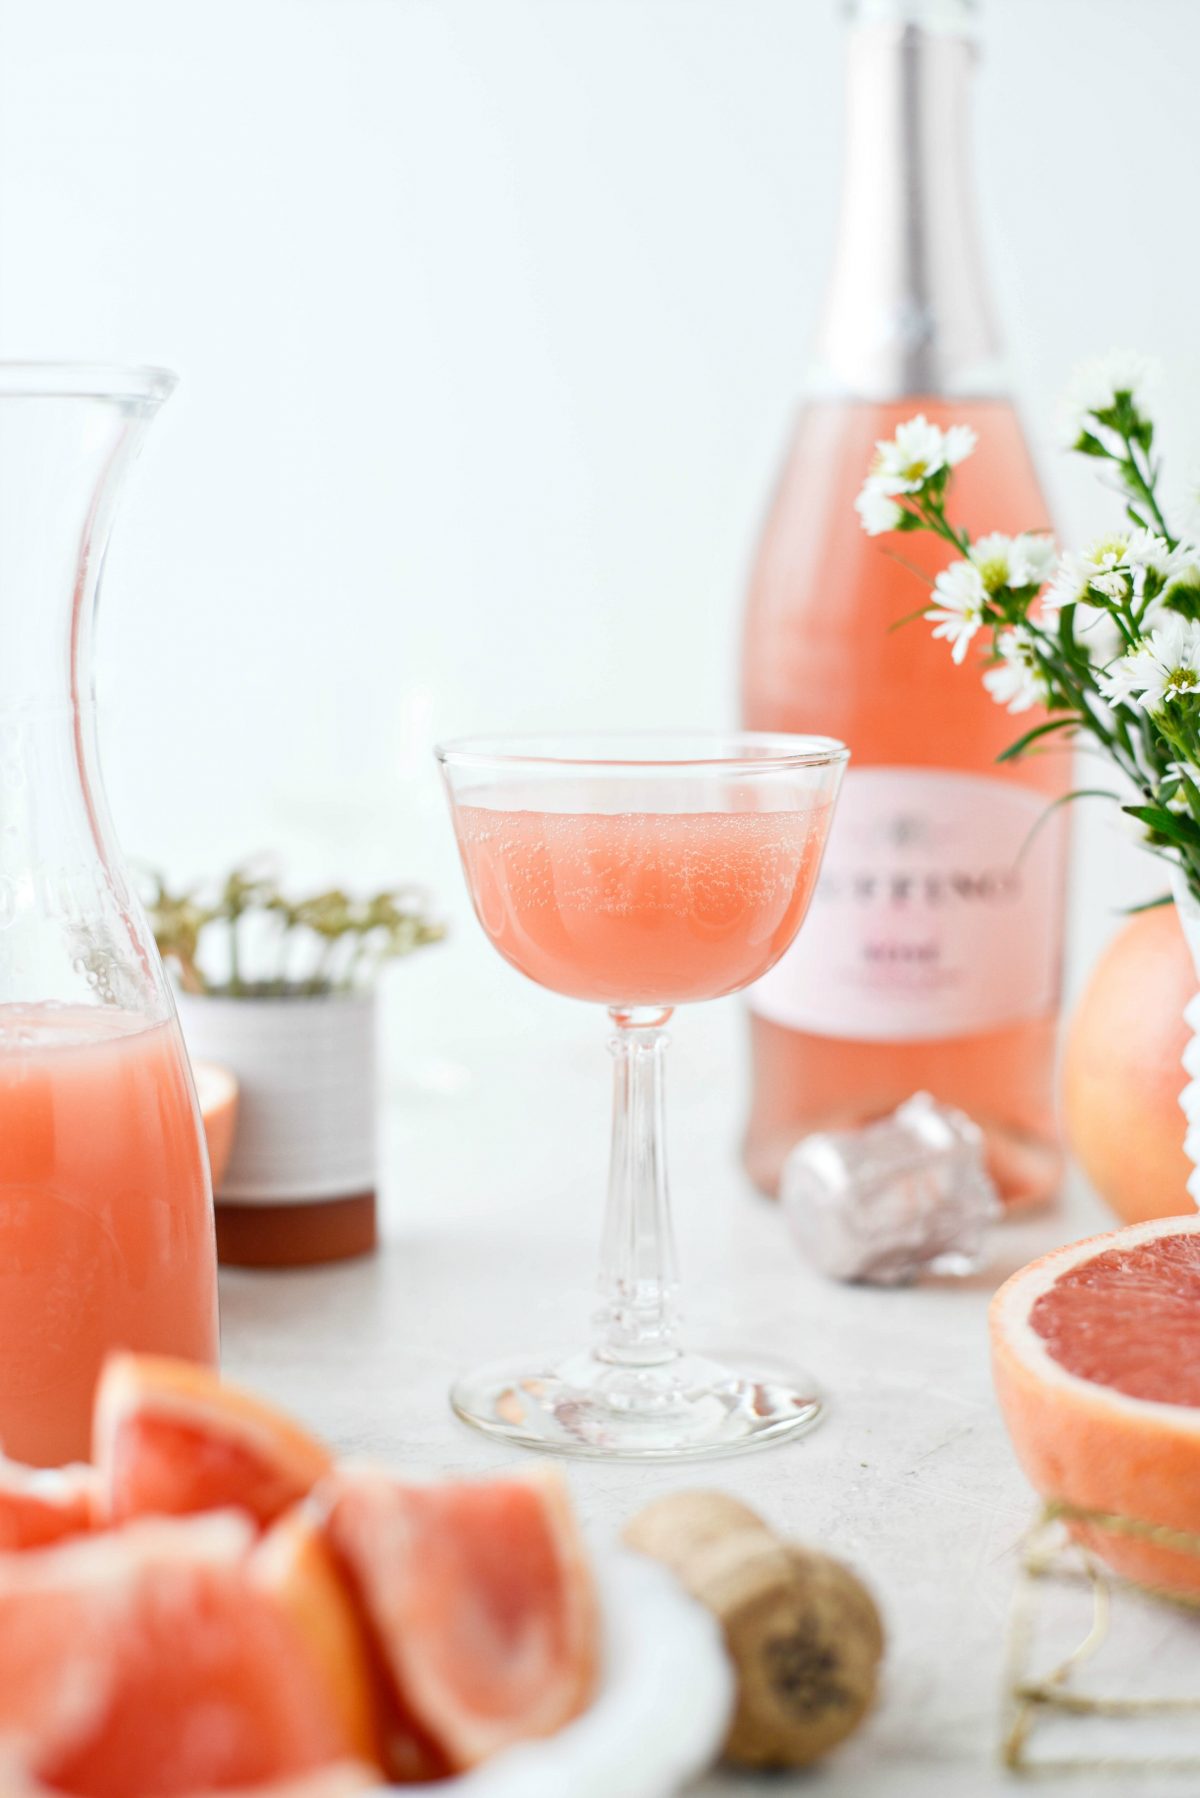  Grapefruit Rosé Mimosen l SimplyScratch.com #erwachsene #getränk #grapefruit #rose #mimosa #ostern #brunch #mothersday